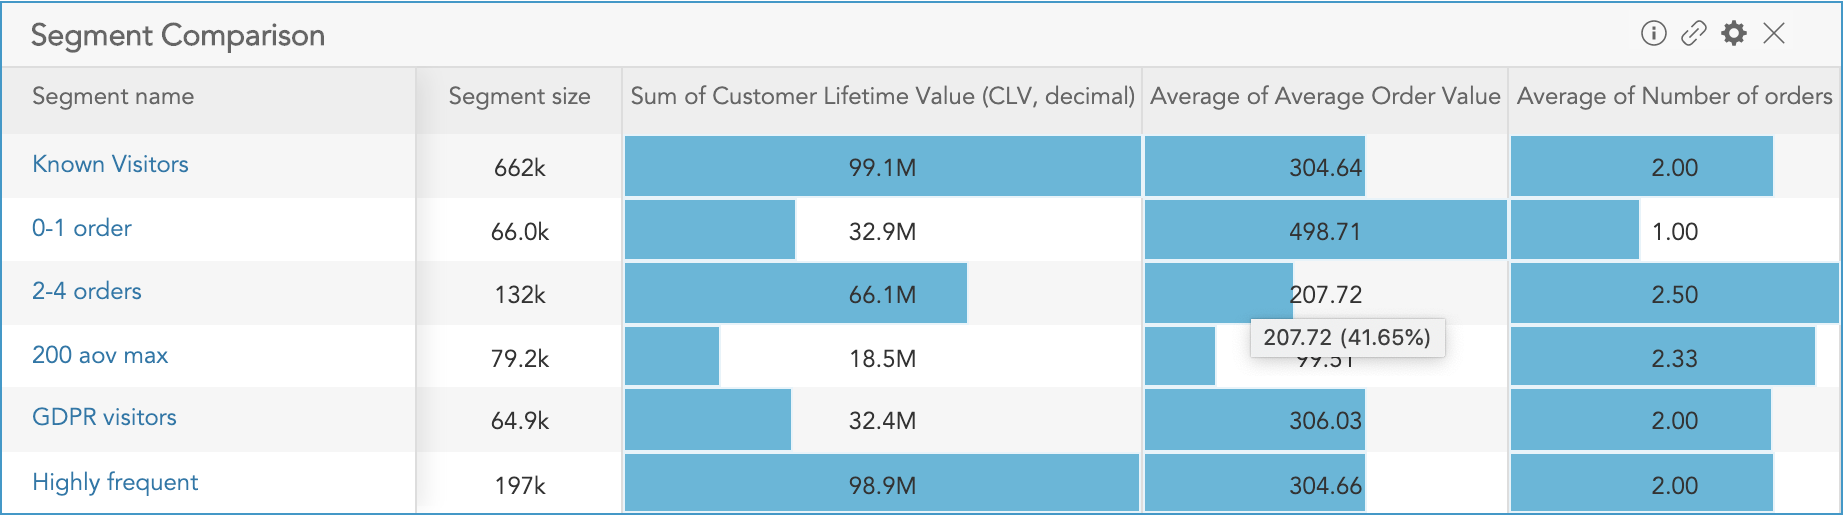 How to compare customer profile values across customer segments using the Segment Comparison Insight in BlueConic